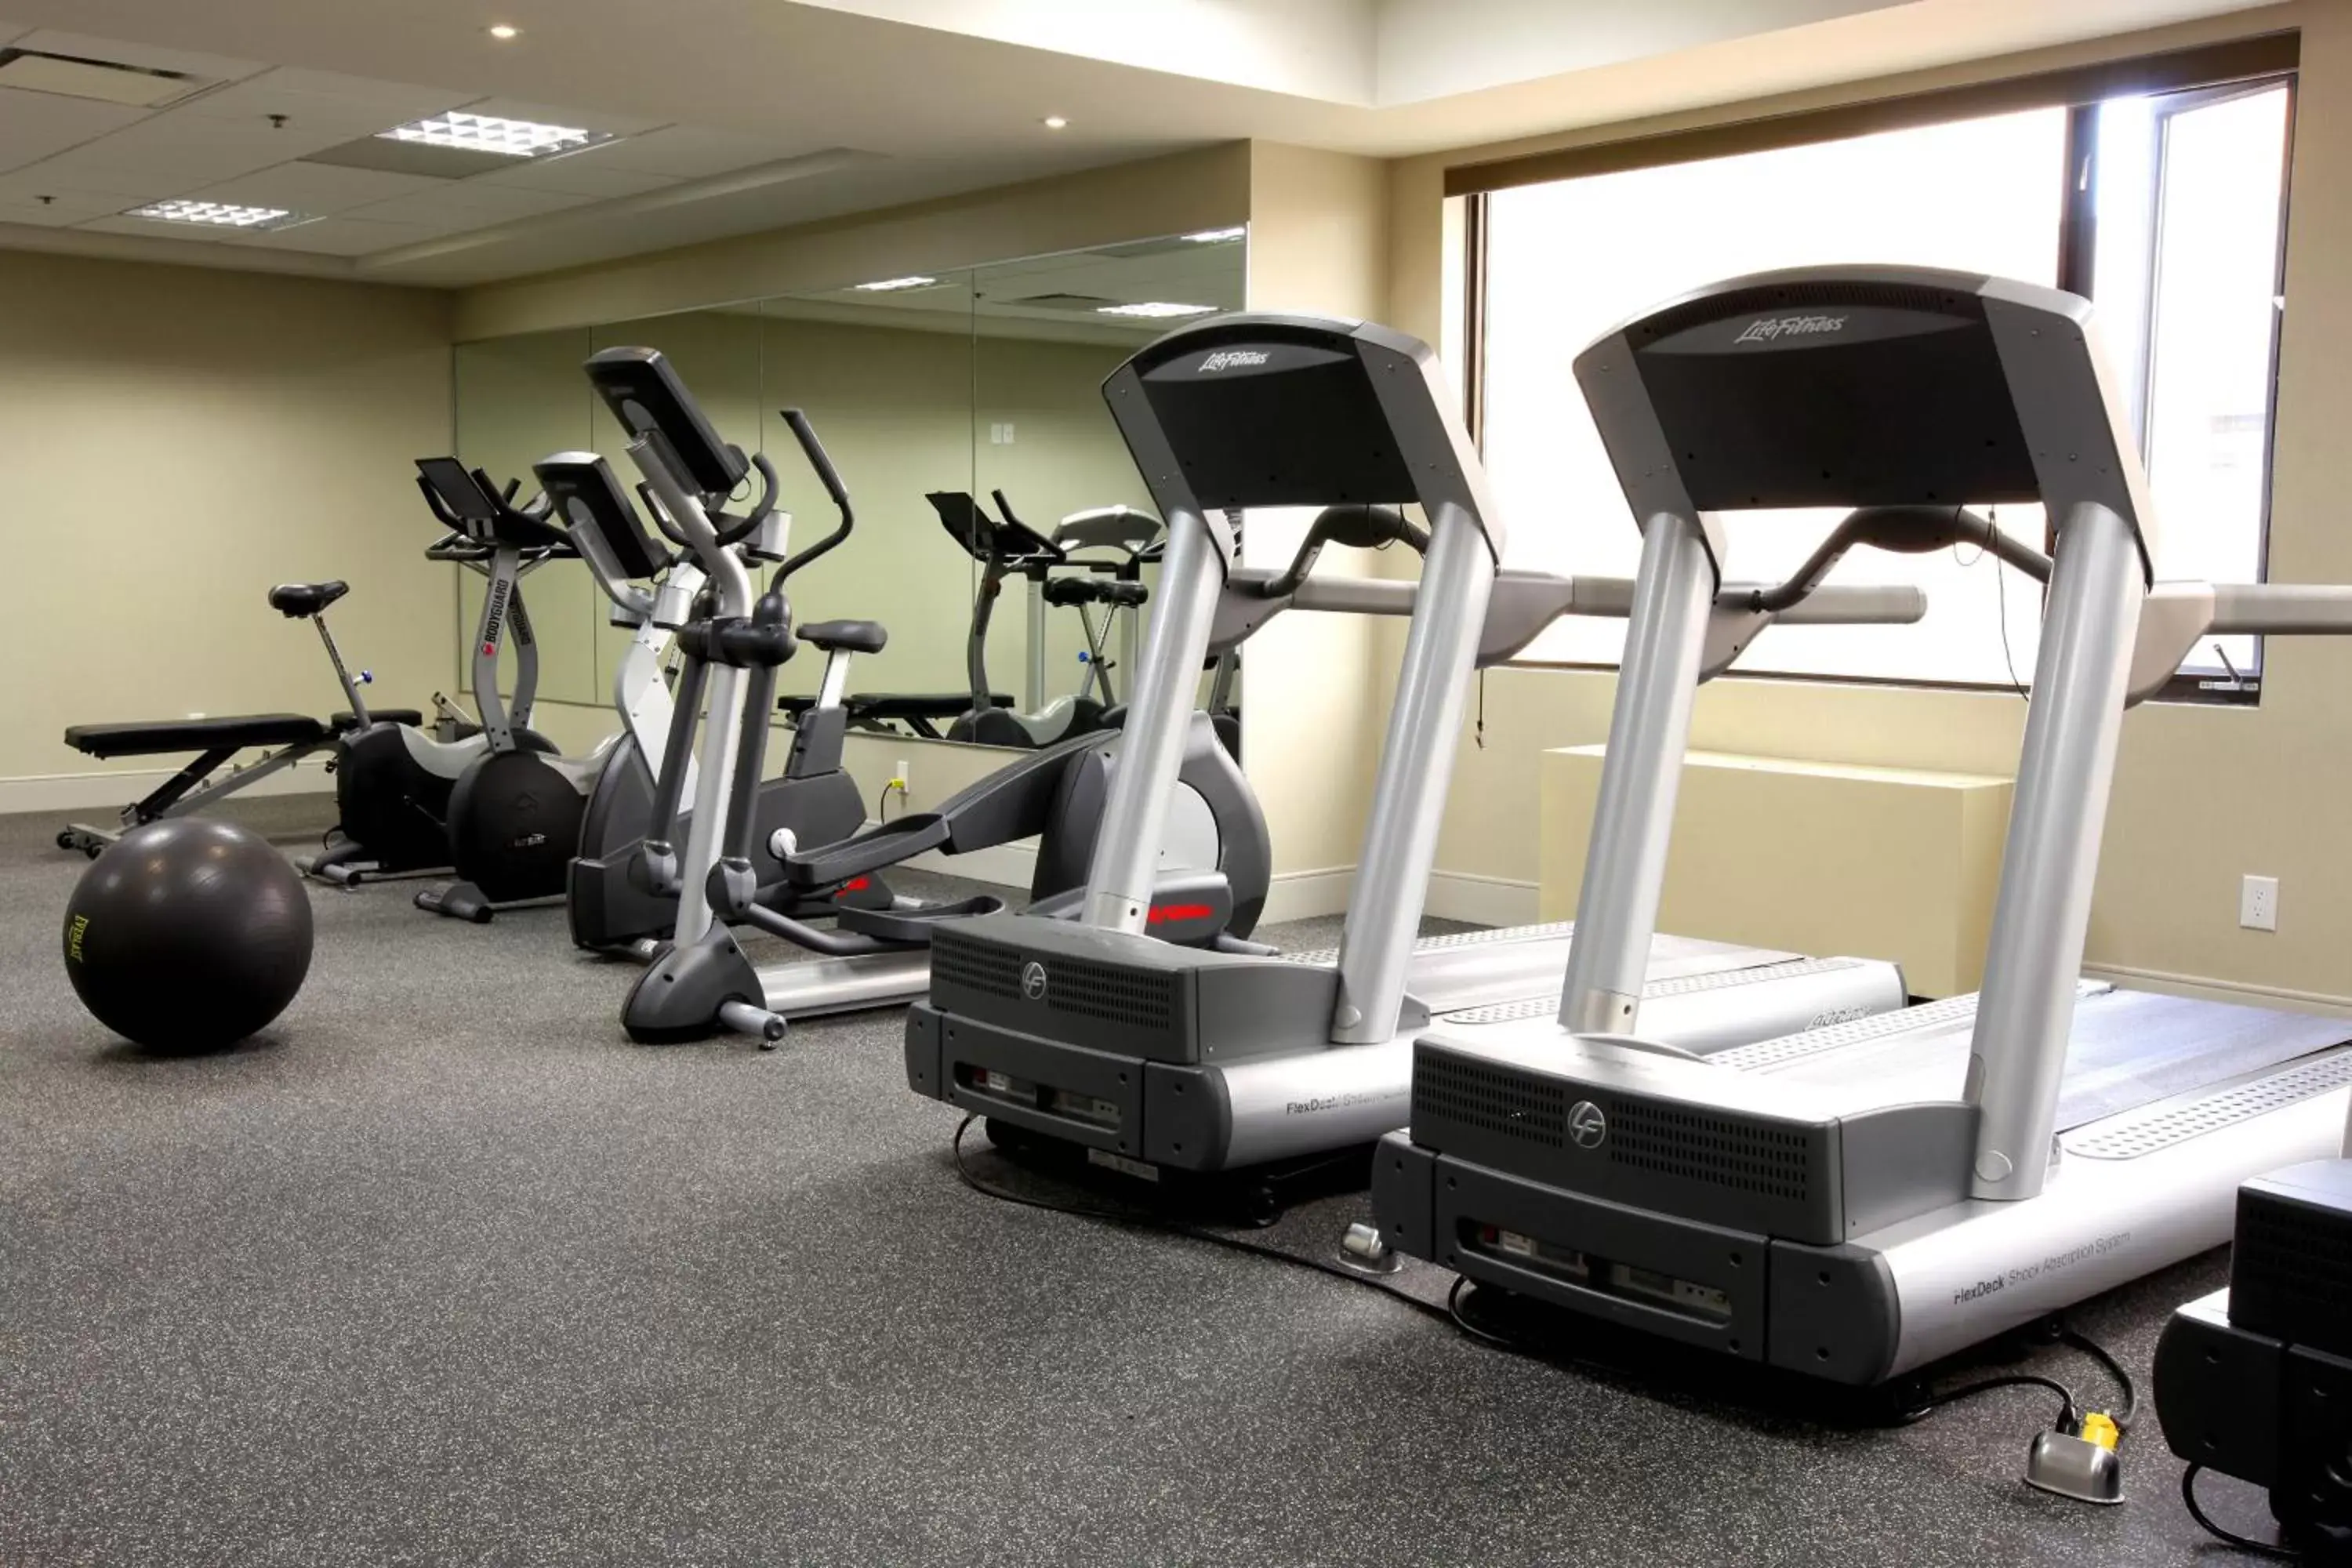 Fitness centre/facilities, Fitness Center/Facilities in Delta Hotels by Marriott Regina